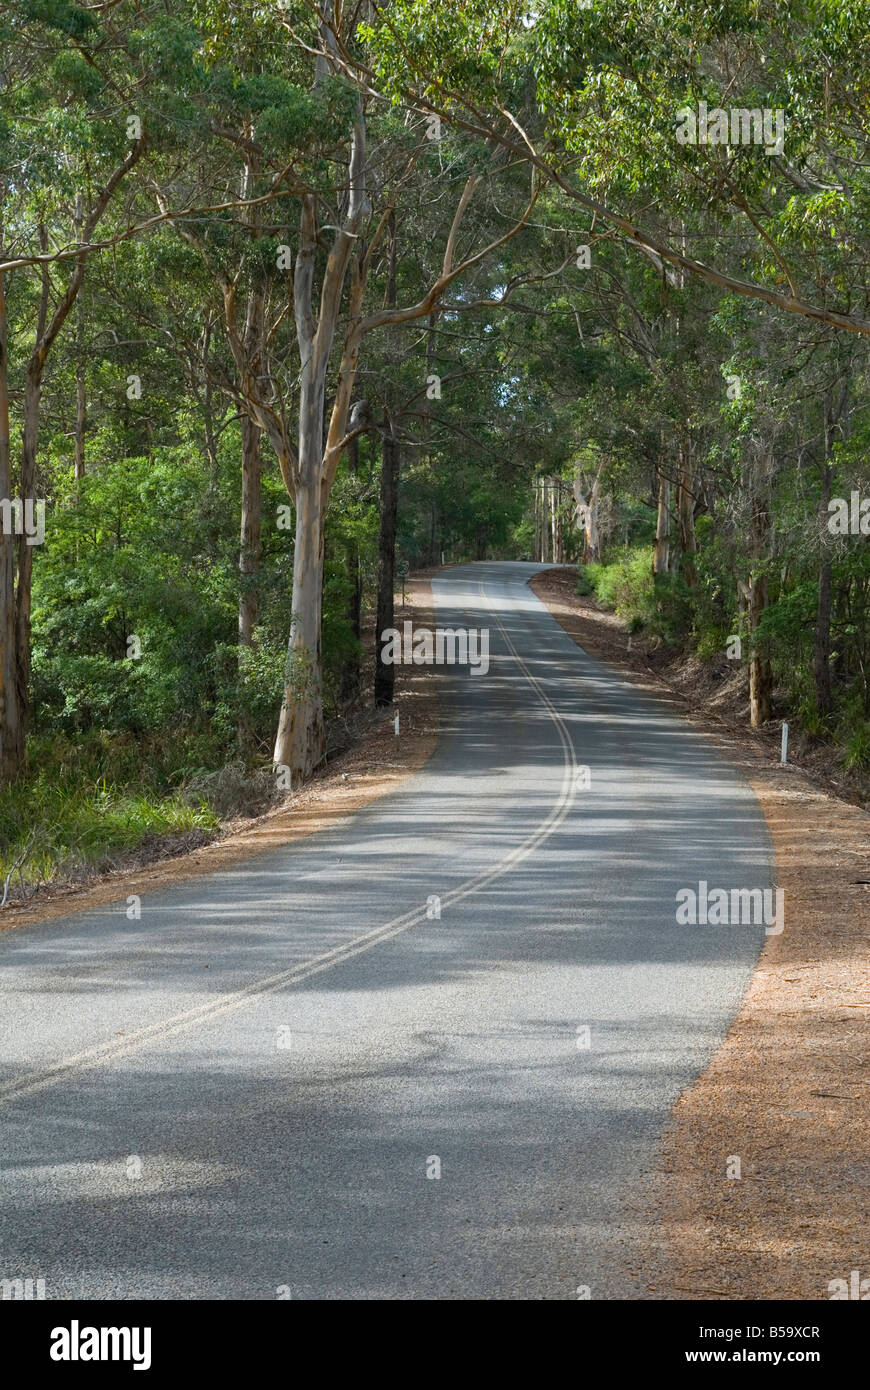 Une route pavée est ombragé avec de la lumière gris entourant les arbres le long de la route en voiture de tourisme Scotsdale, le Danemark, l'Australie Occidentale Banque D'Images